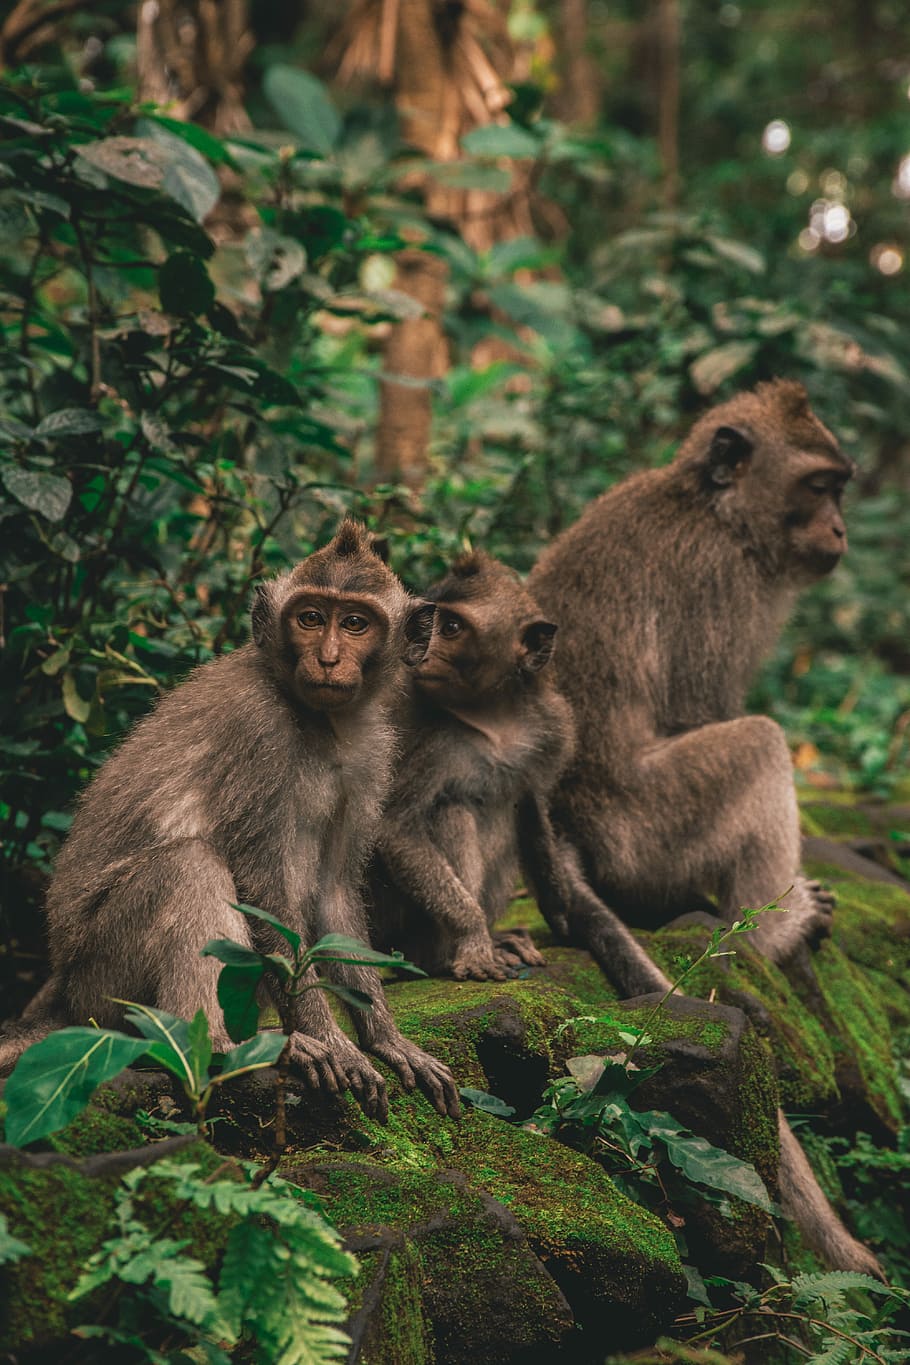 Monkey Family, photography of three monkeys sitting on mossed stone